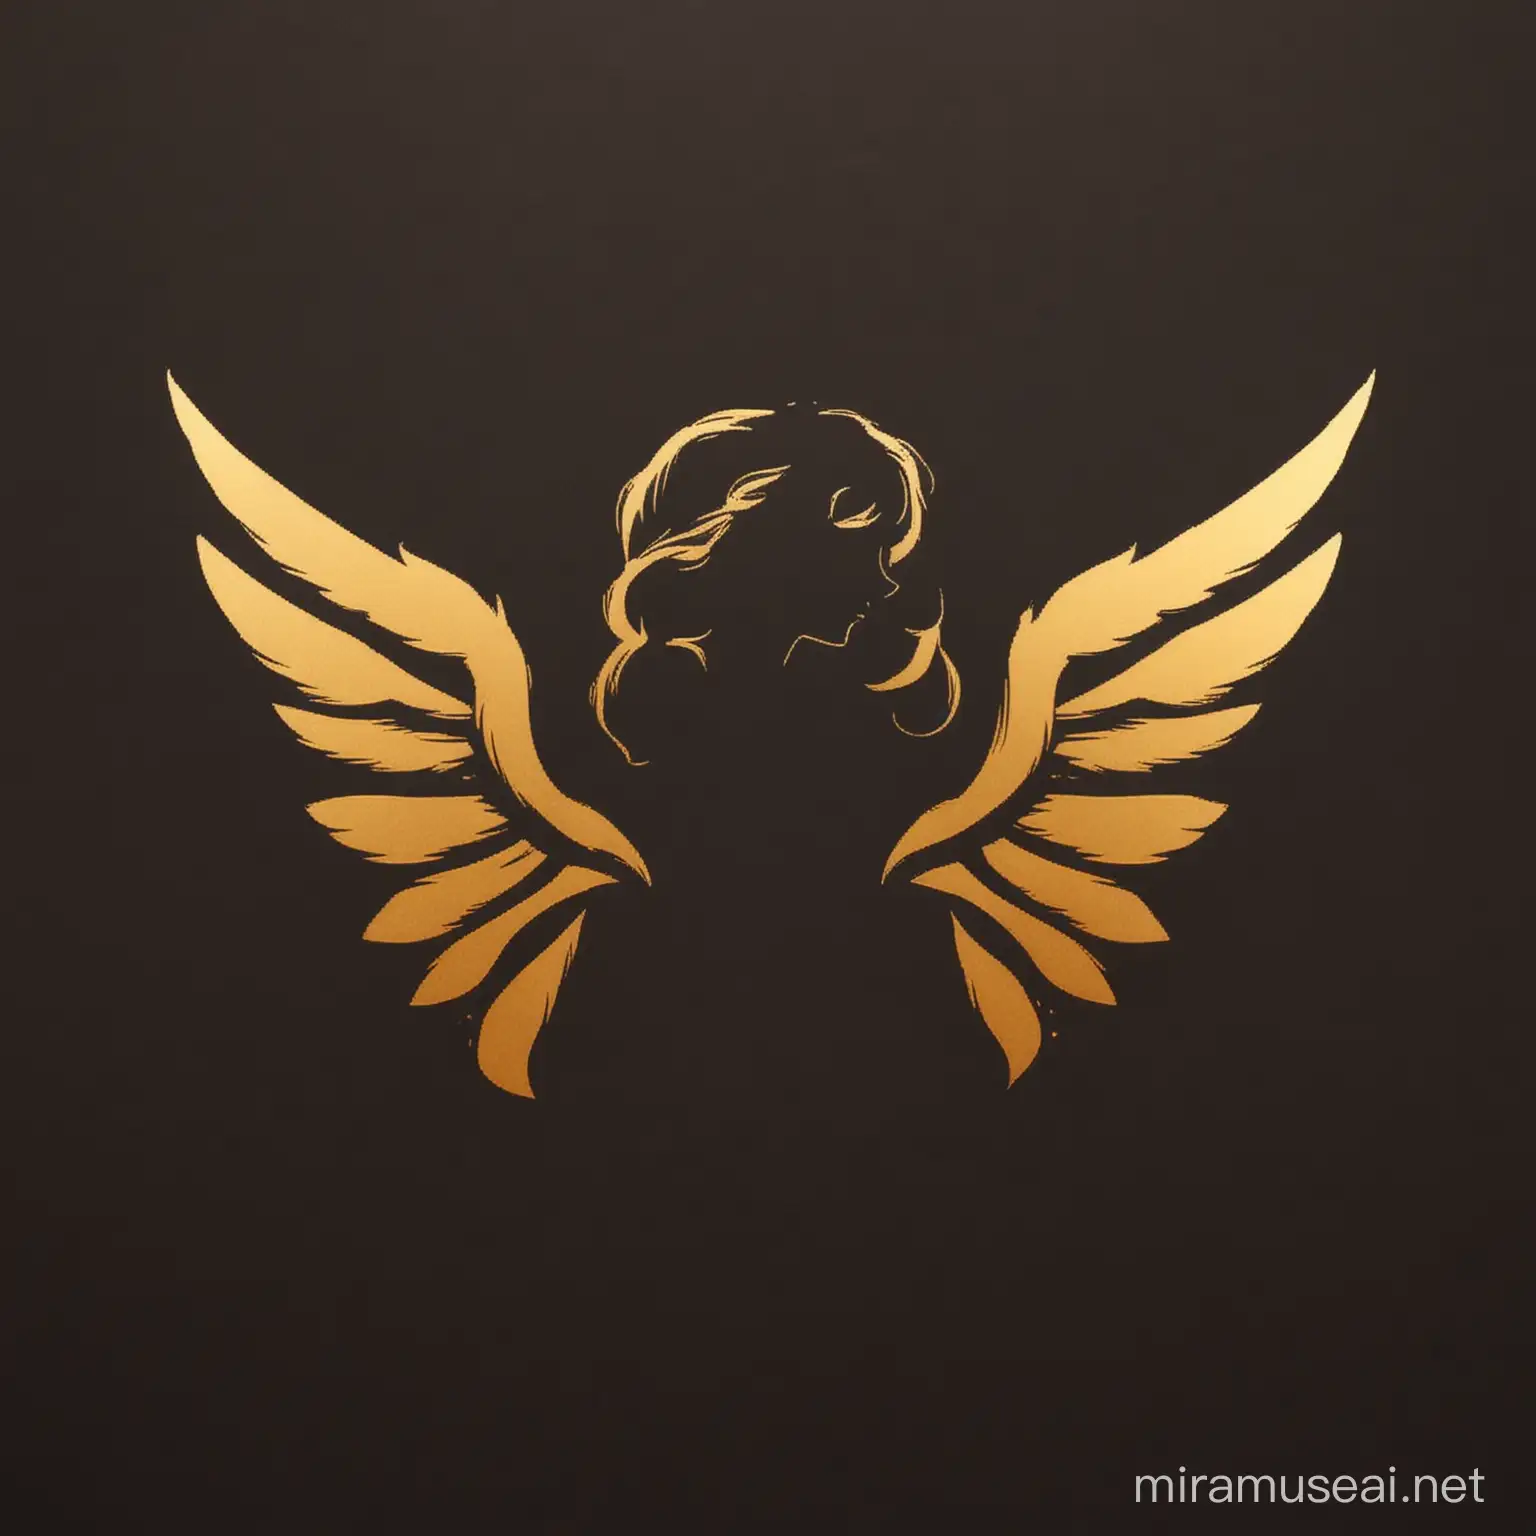 Golden Winged Girl Silhouette Logo Design